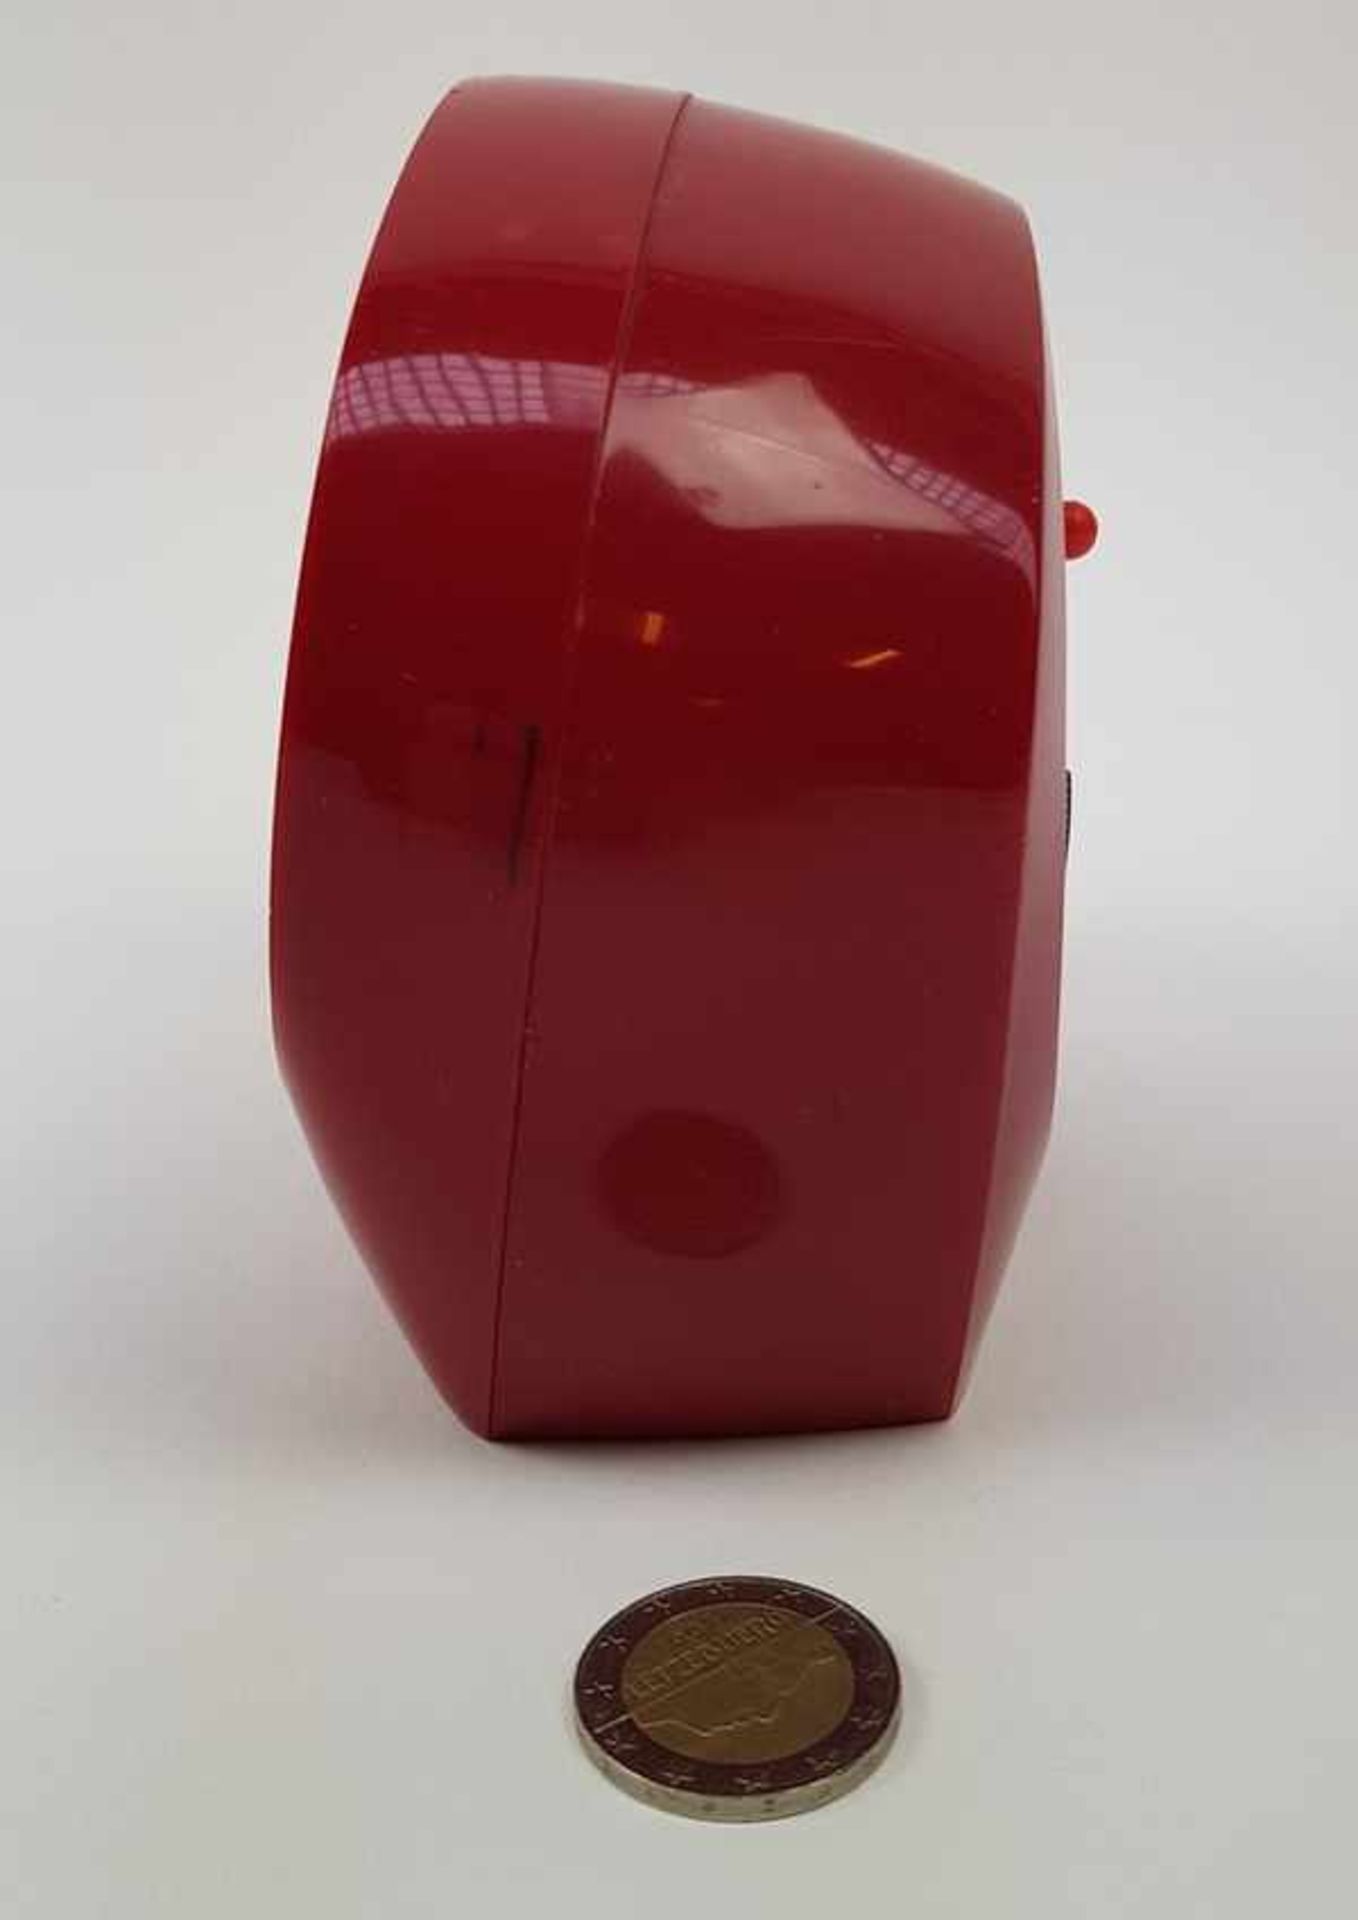 (Design) Klok Rhythm Japan Alarm 2 JewelsRhythm Space Age jaren '70 klok, mechanisch met alarm. - Bild 3 aus 5